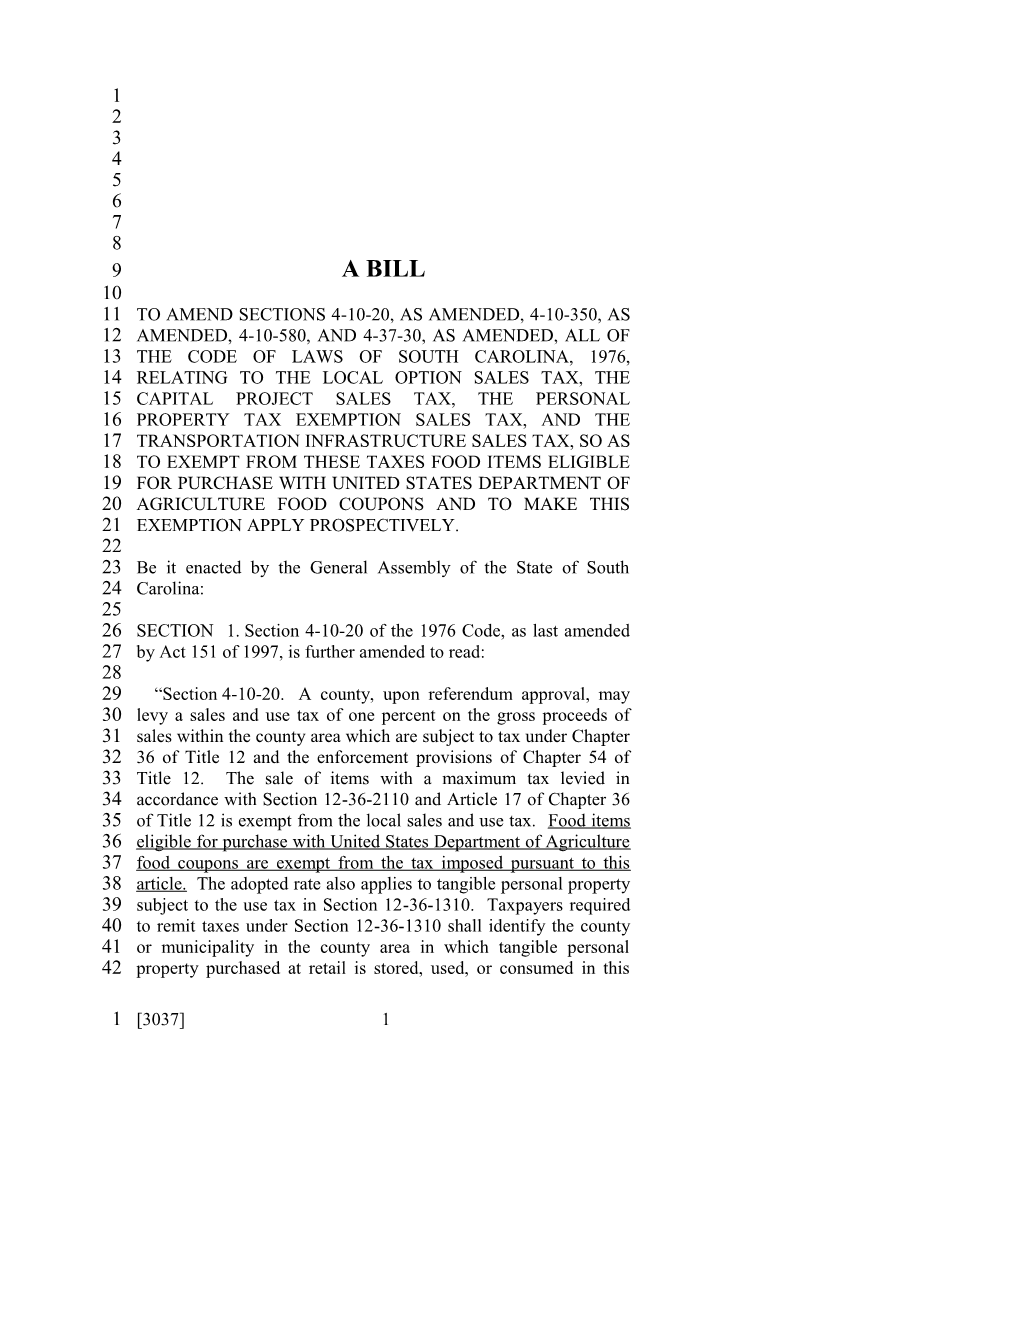 2005-2006 Bill 3037: Food Sales Tax Exemption - South Carolina Legislature Online